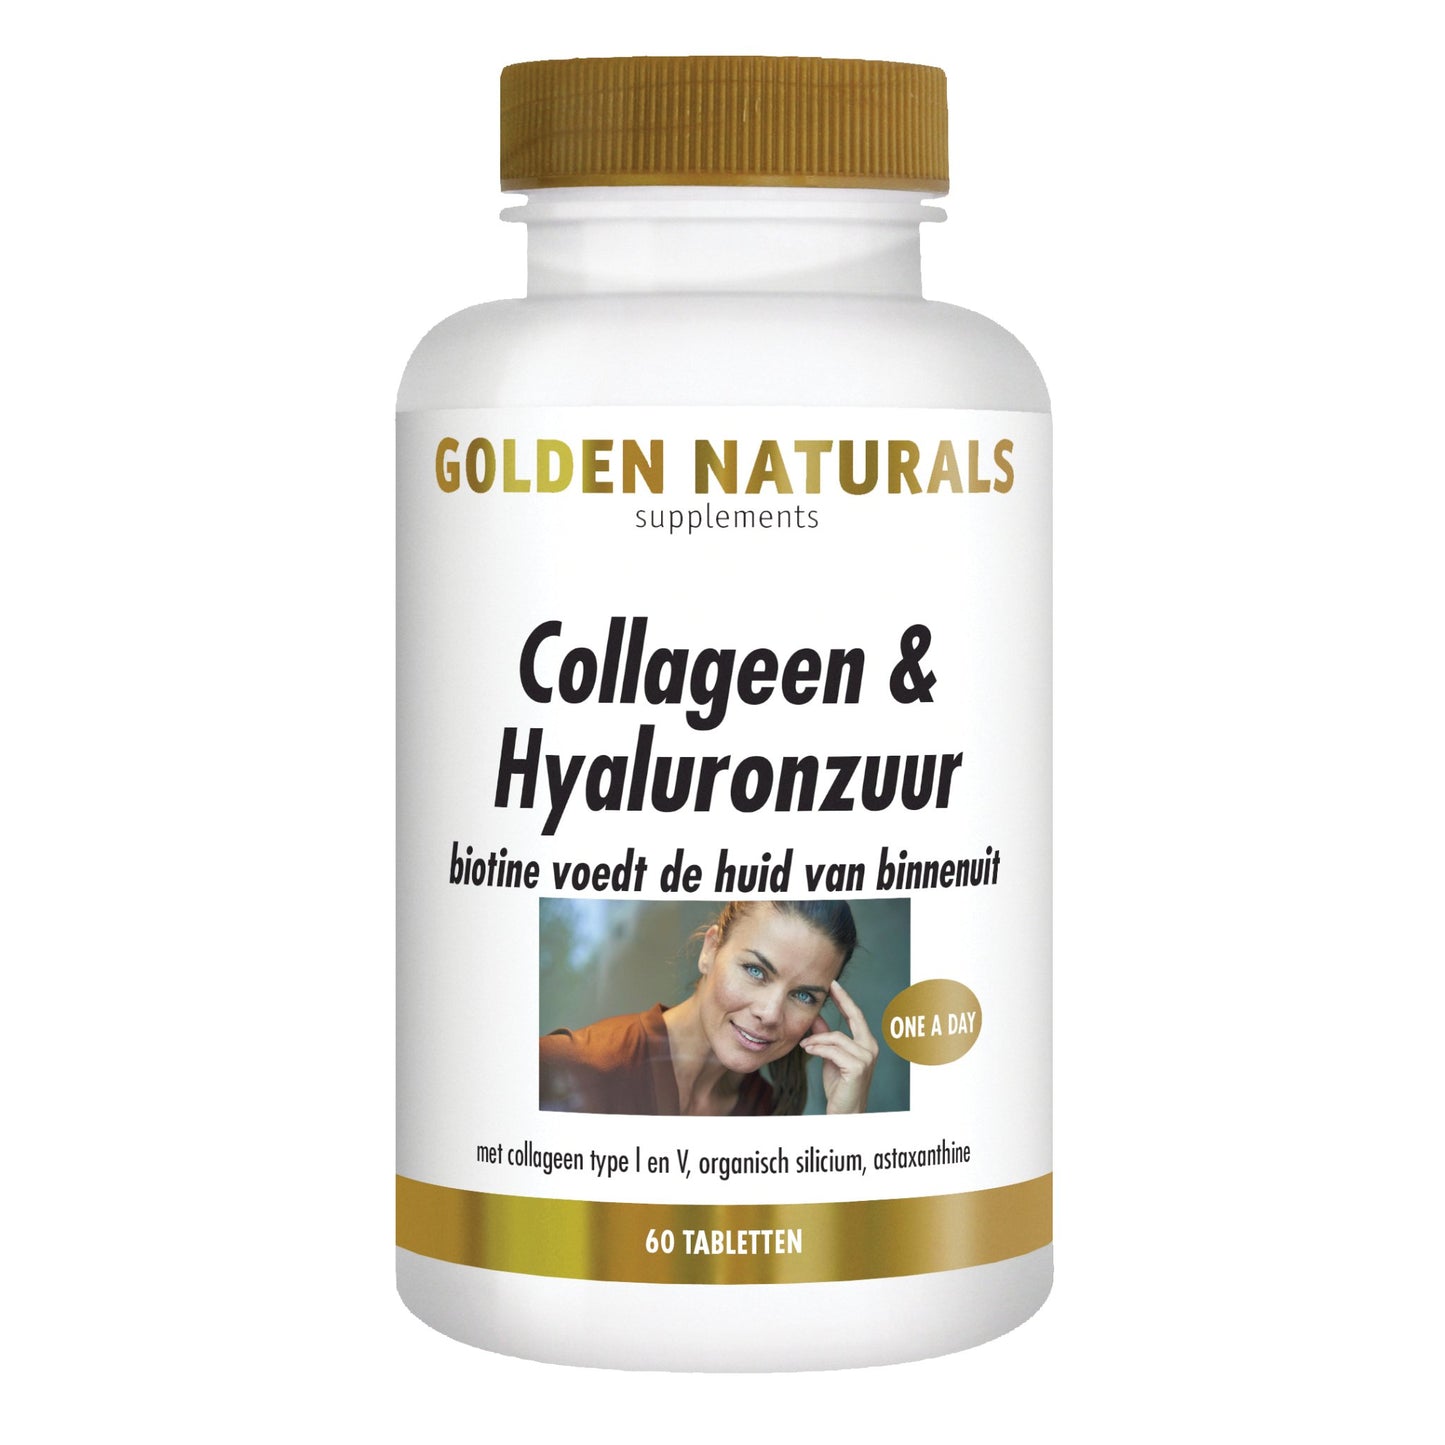 Collageen & Hyaluronzuur - 60 - tabletten Supplement Golden Naturals   